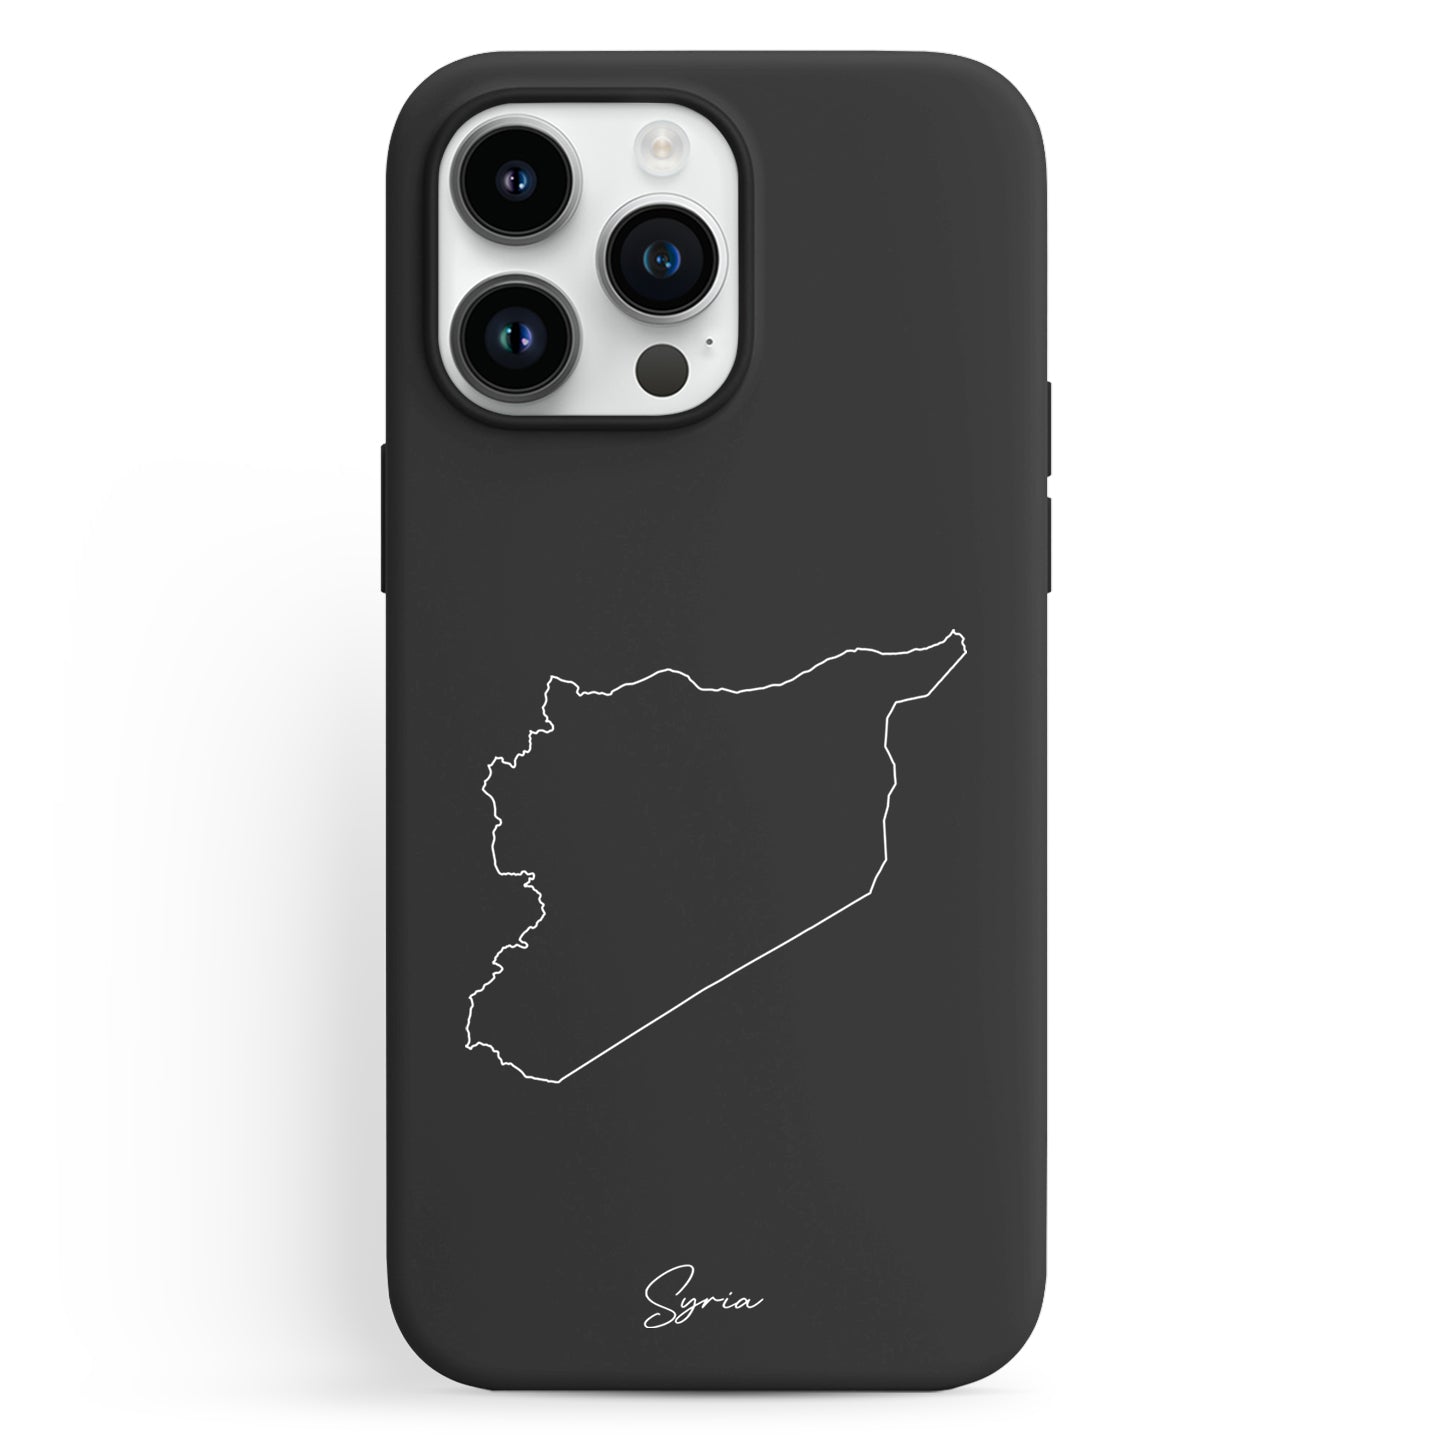 Handyhüllen mit Landkarte - Syrien - 1instaphone